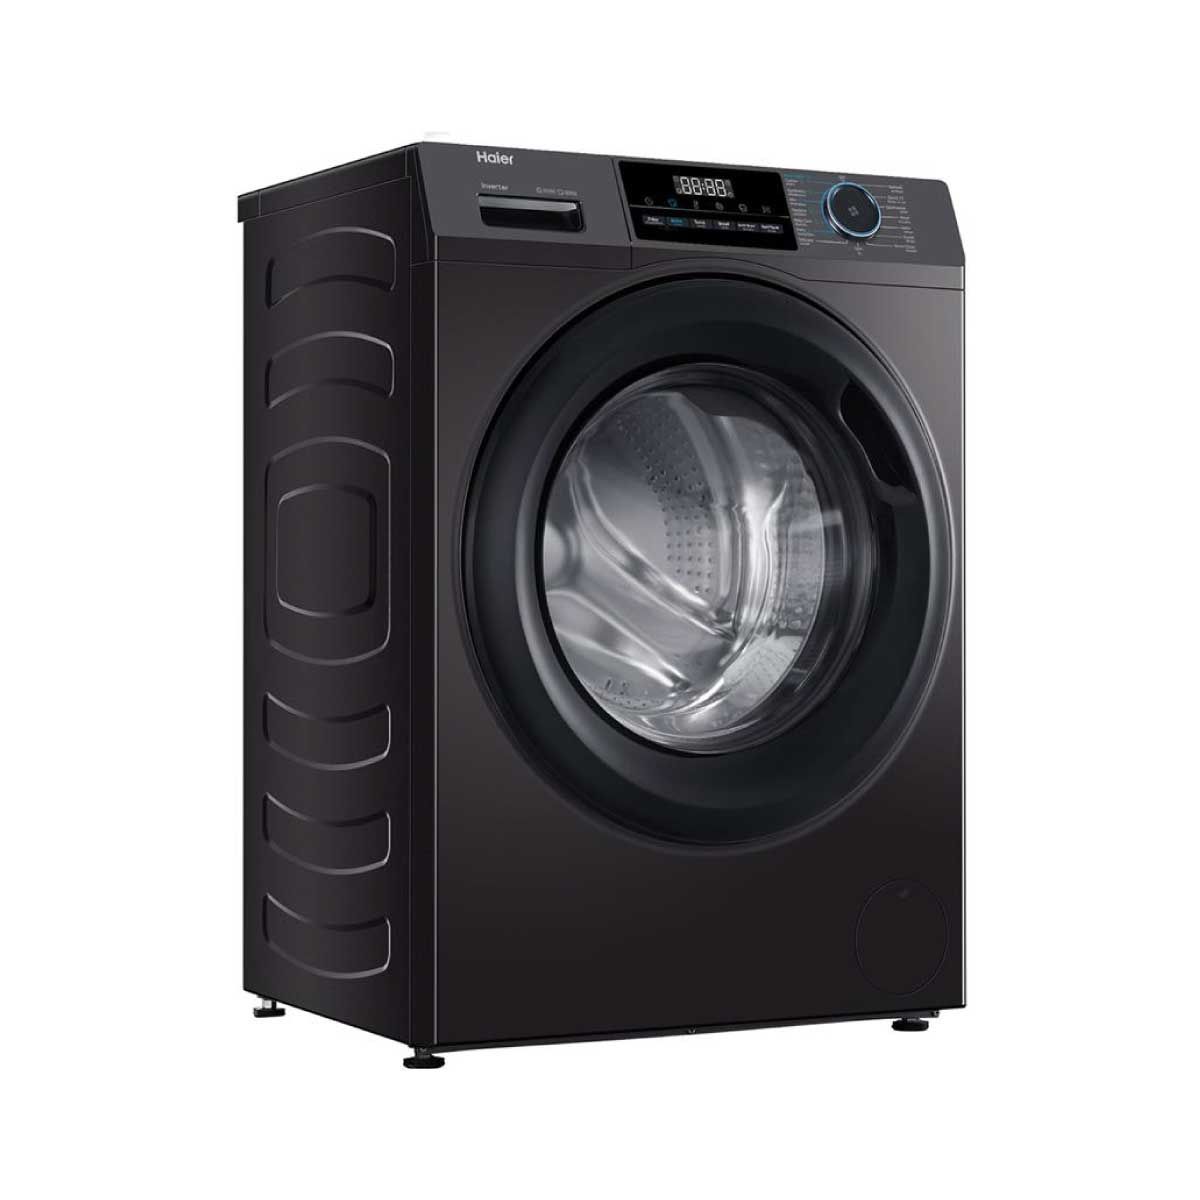 HAIER เครื่องซักผ้าฝาหน้า 9.5Kg. สีดำ รุ่นHW95-BP14929AS6